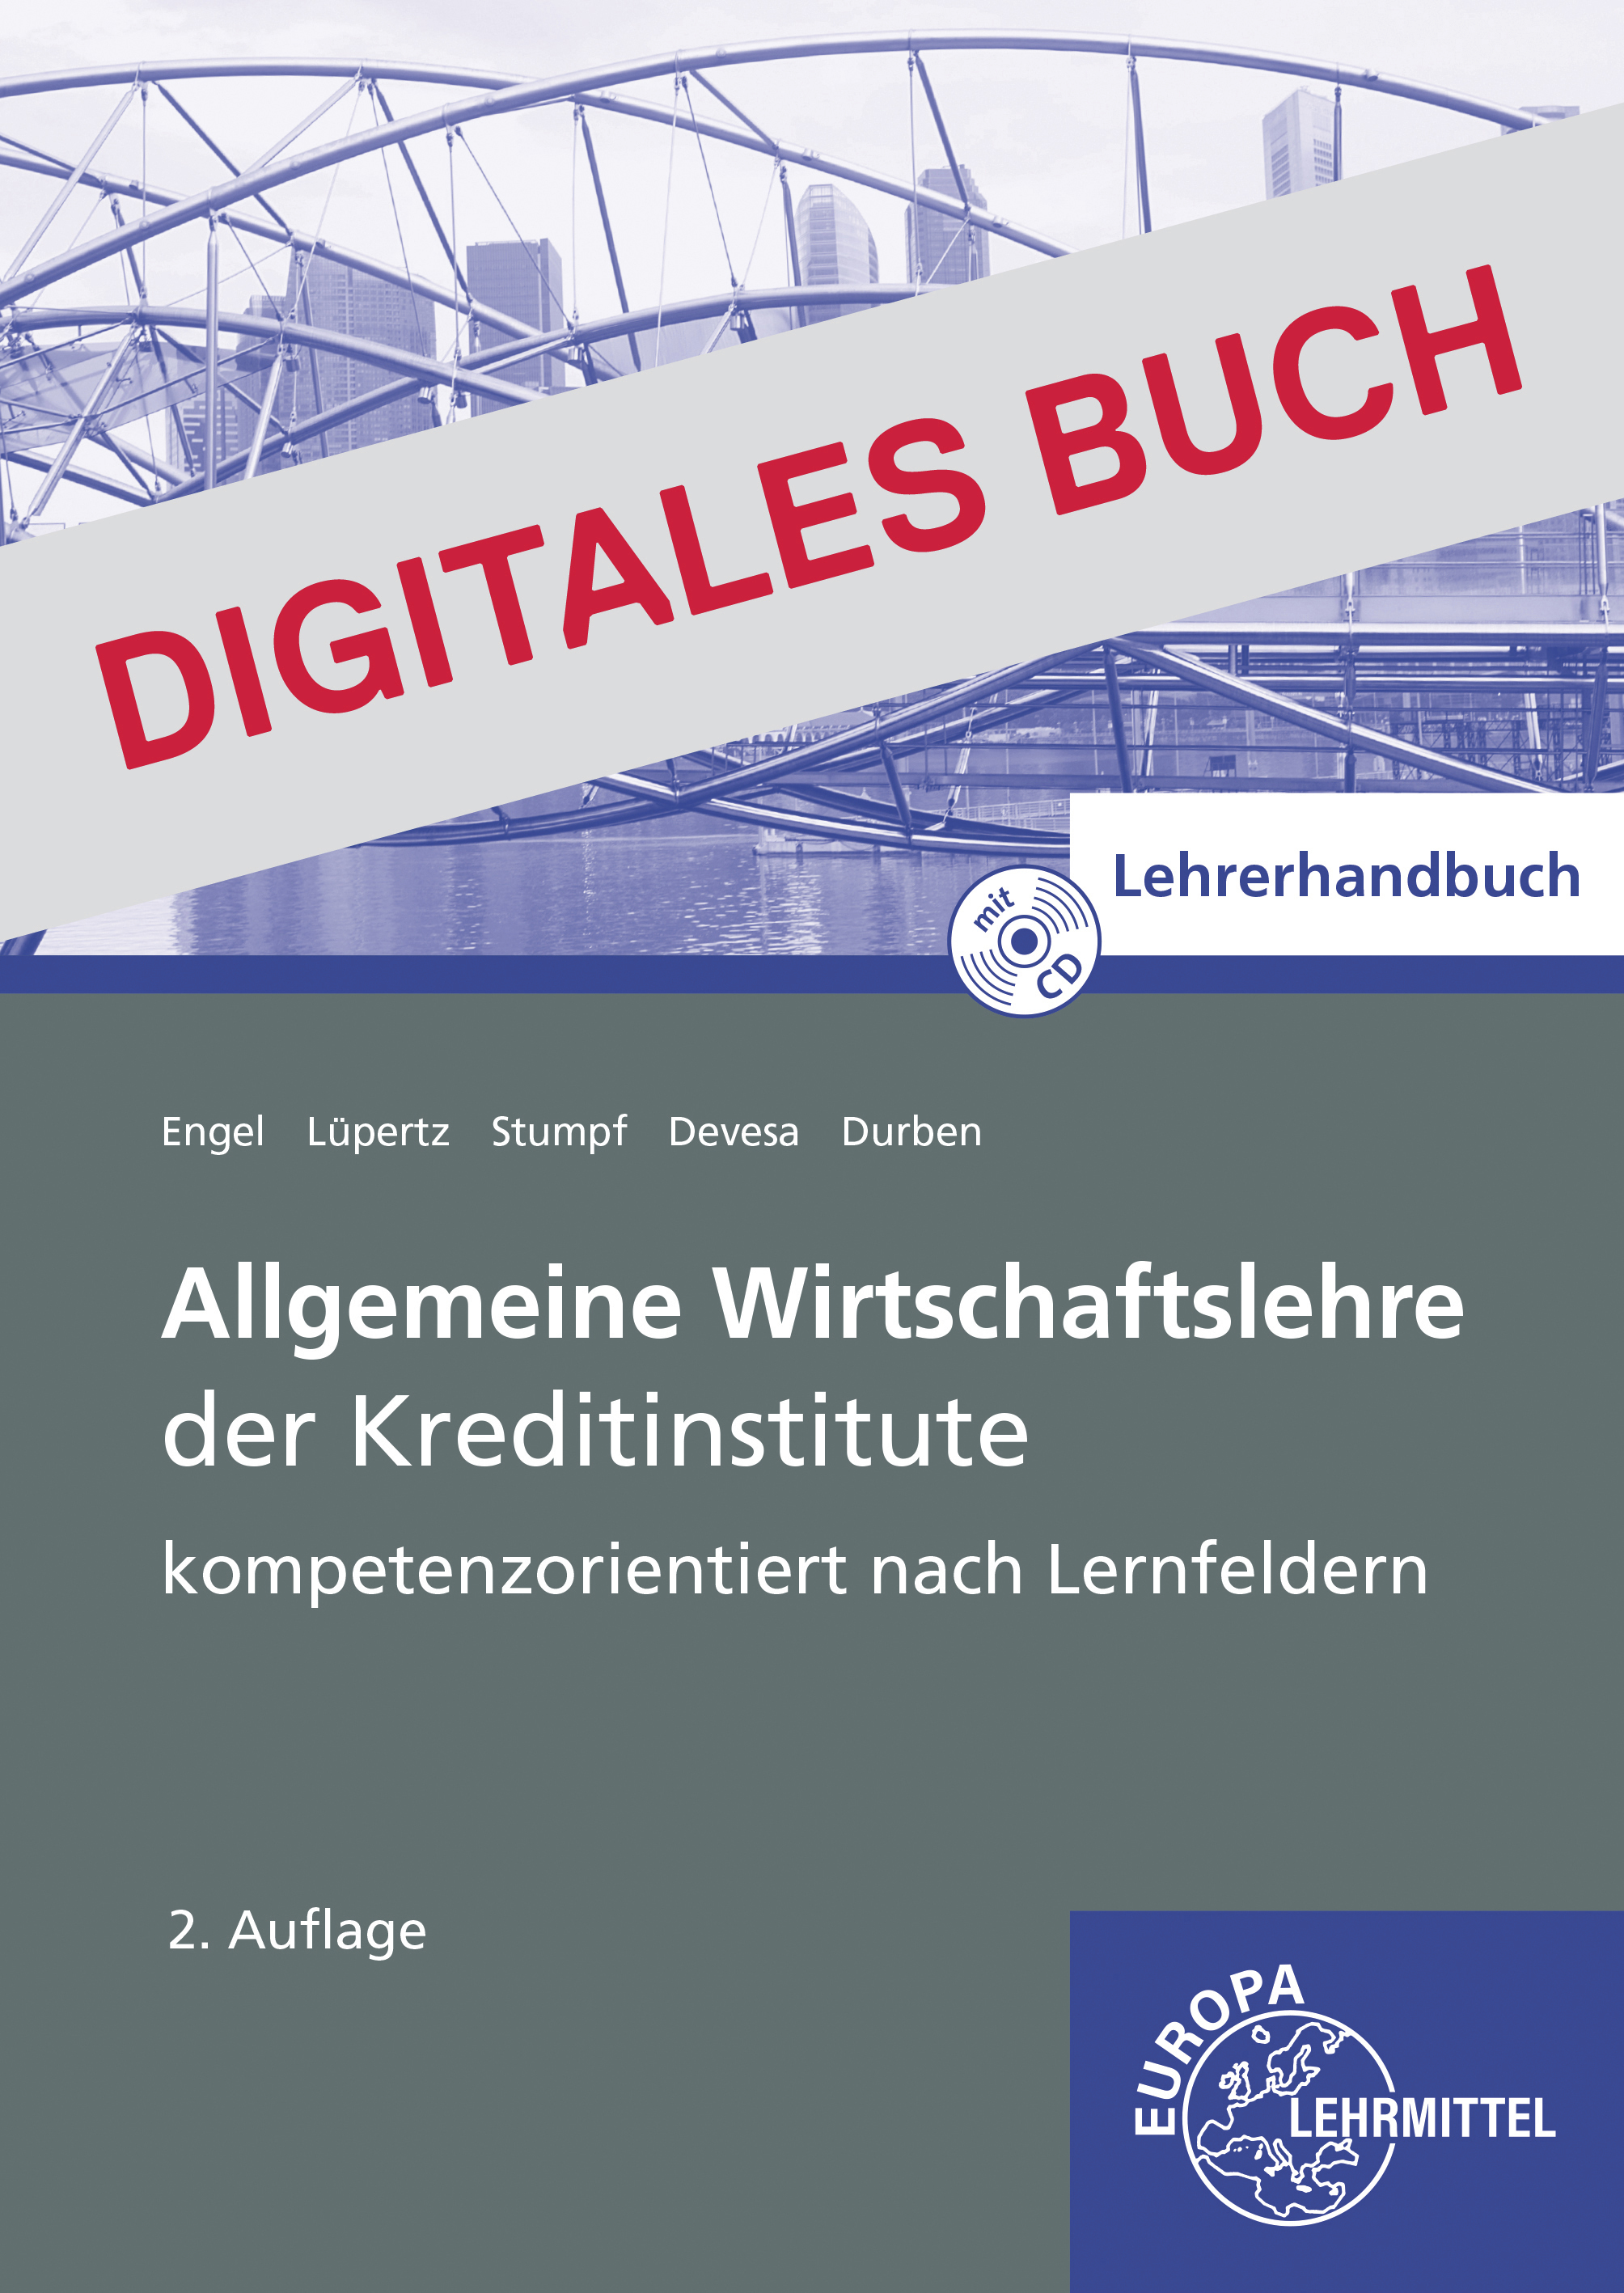 Lehrerhandbuch Allgemeine Wirtschaftslehre der Kreditinstitute - Digitales Buch